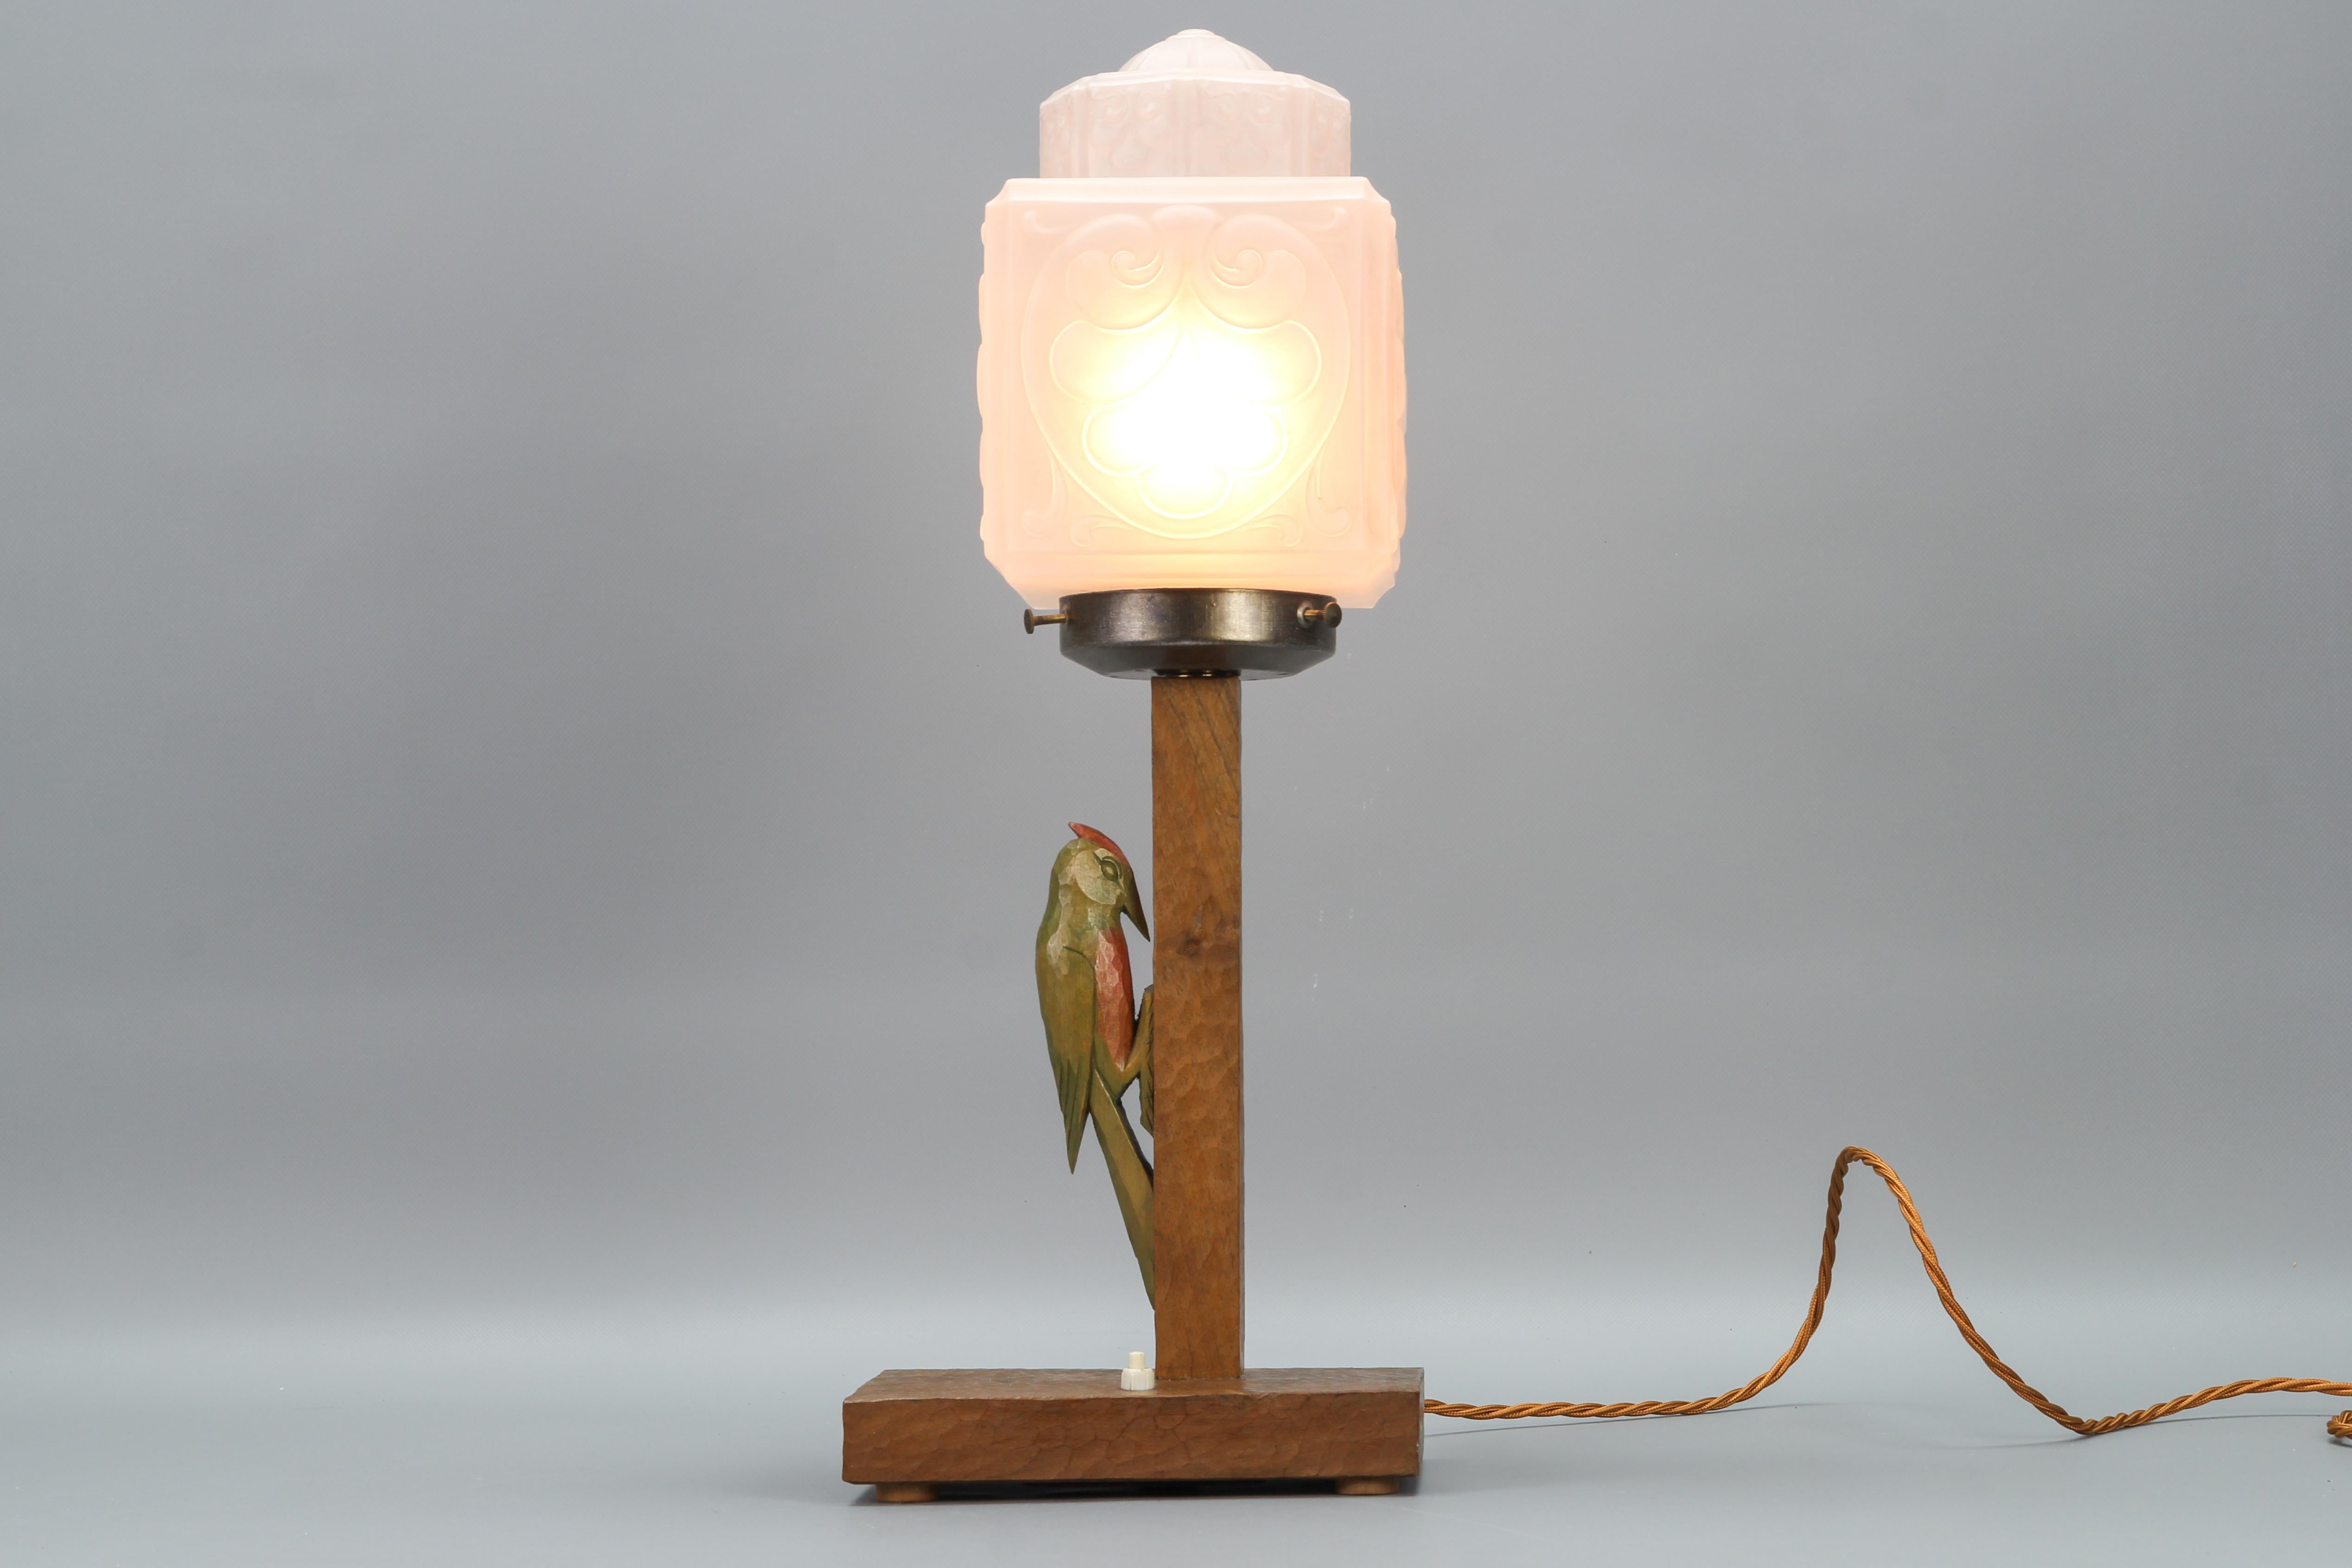 Lampe de table Art Déco allemande en bois et verre dépoli avec un pivert des années 1930.
Cette grande et belle lampe de table Art déco d'époque présente un abat-jour en verre dépoli blanc orné et une base en noyer sculptée à la main avec une